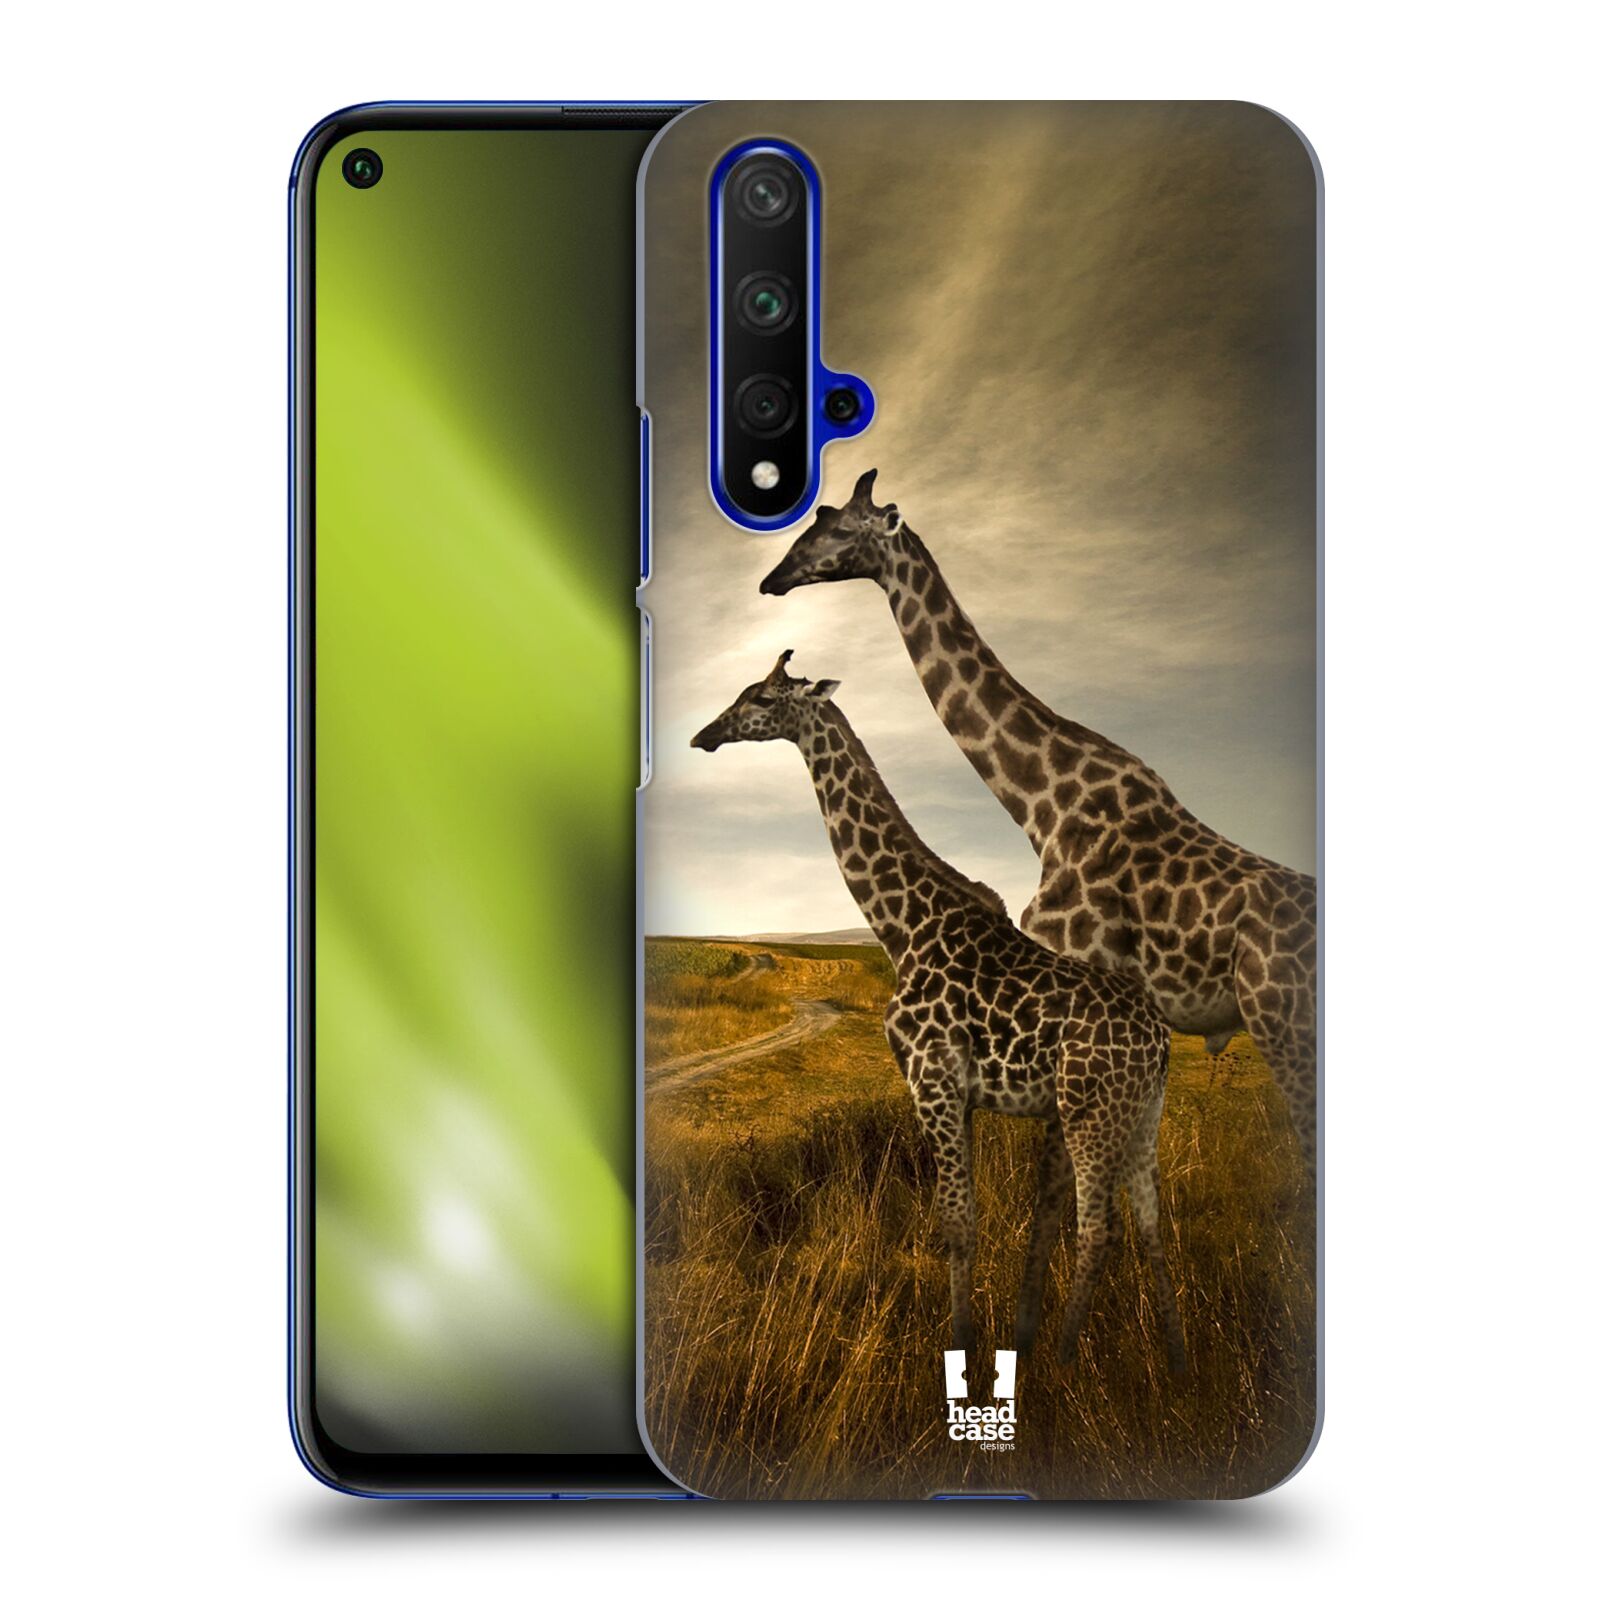 Zadní obal pro mobil Honor 20 - HEAD CASE - Svět zvířat žirafy